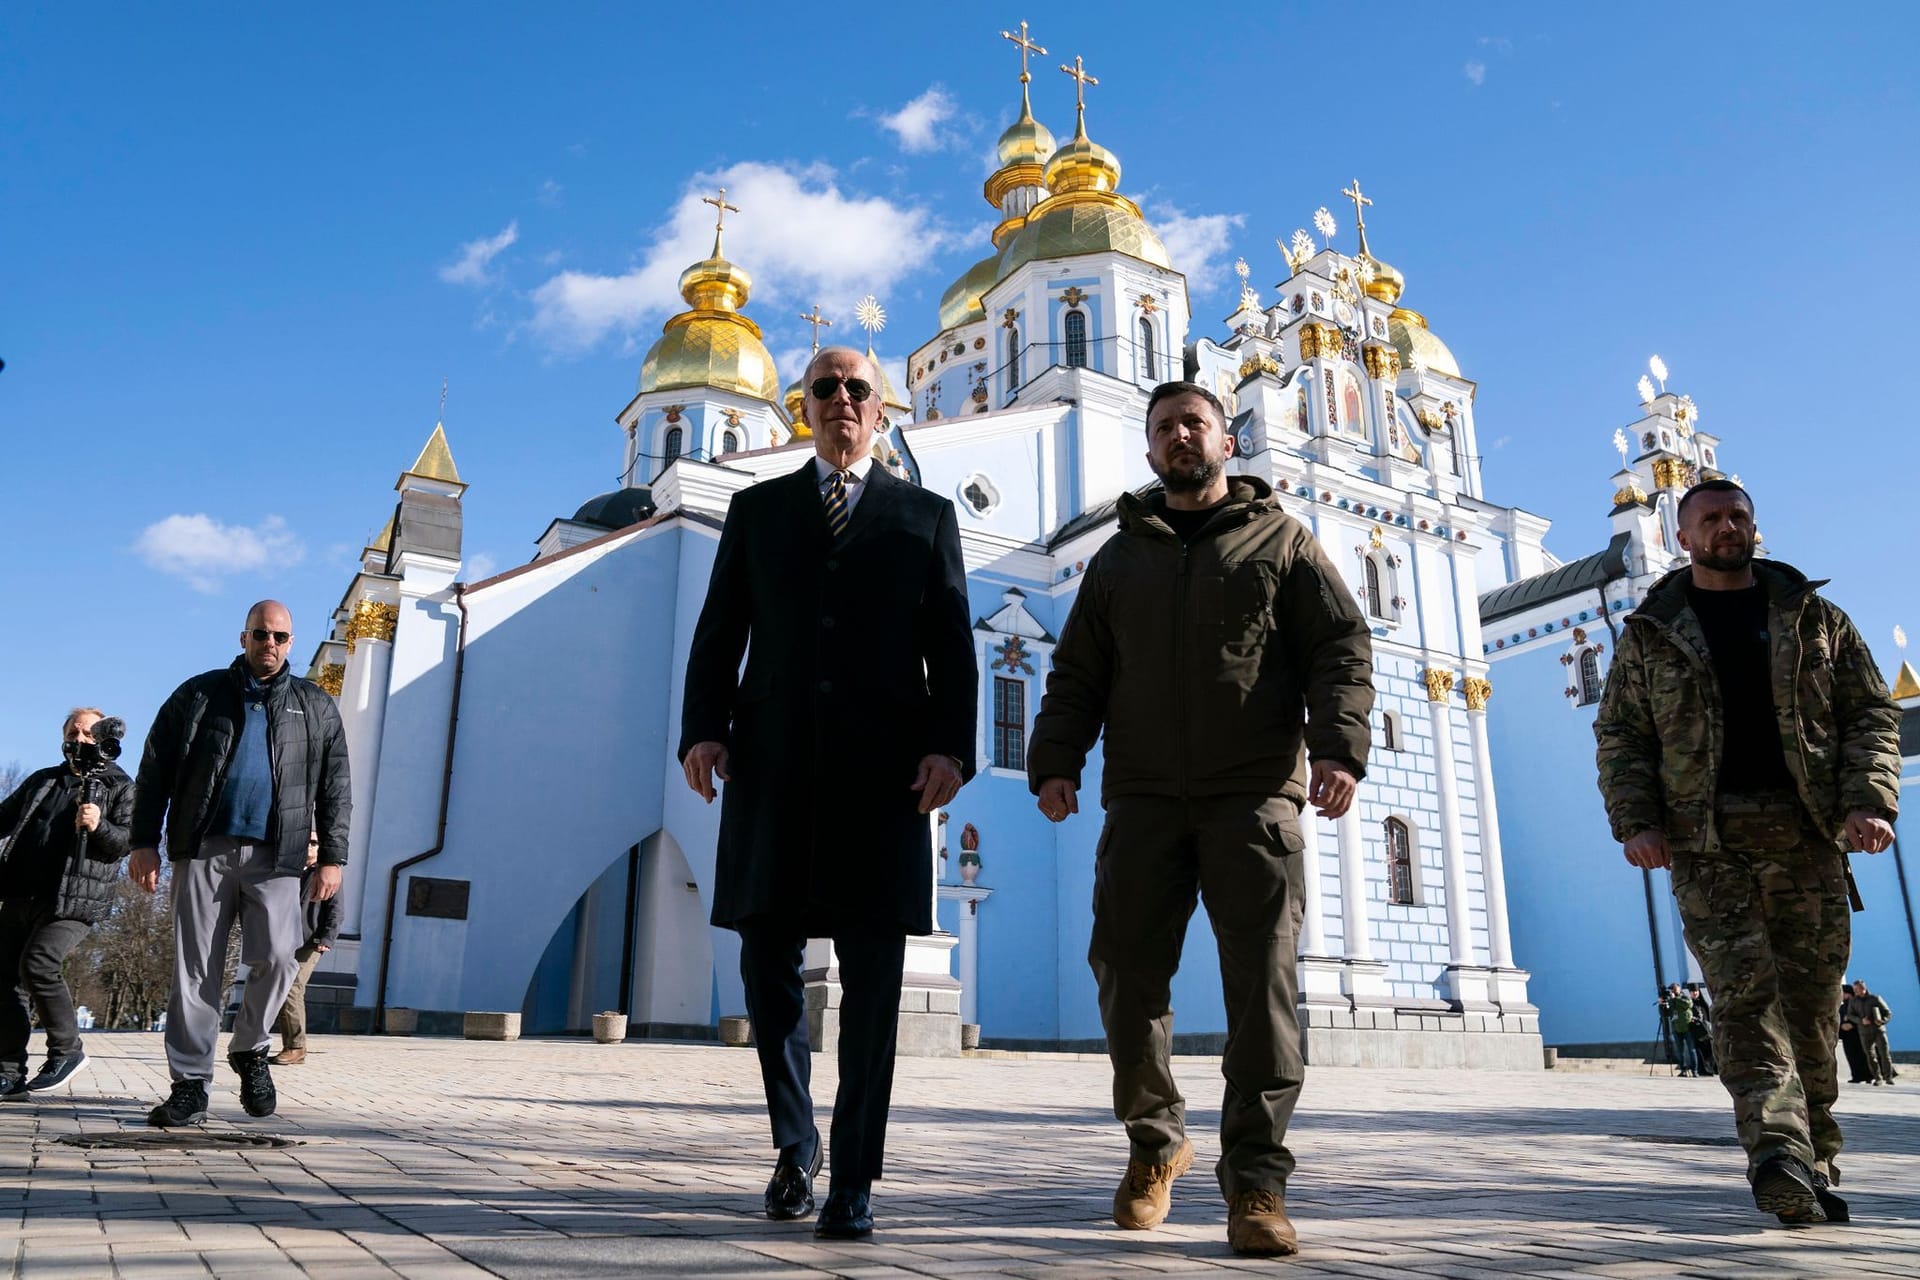 Zusammen mit Präsident Wolodymyr Selenskyj besuchte er die Sophienkathedrale und gedachte der ukrainischen Gefallenen. Trotz eines zwischenzeitlichen Luftalarms spazierten die beiden Staatschefs gemeinsam durch die Stadt.